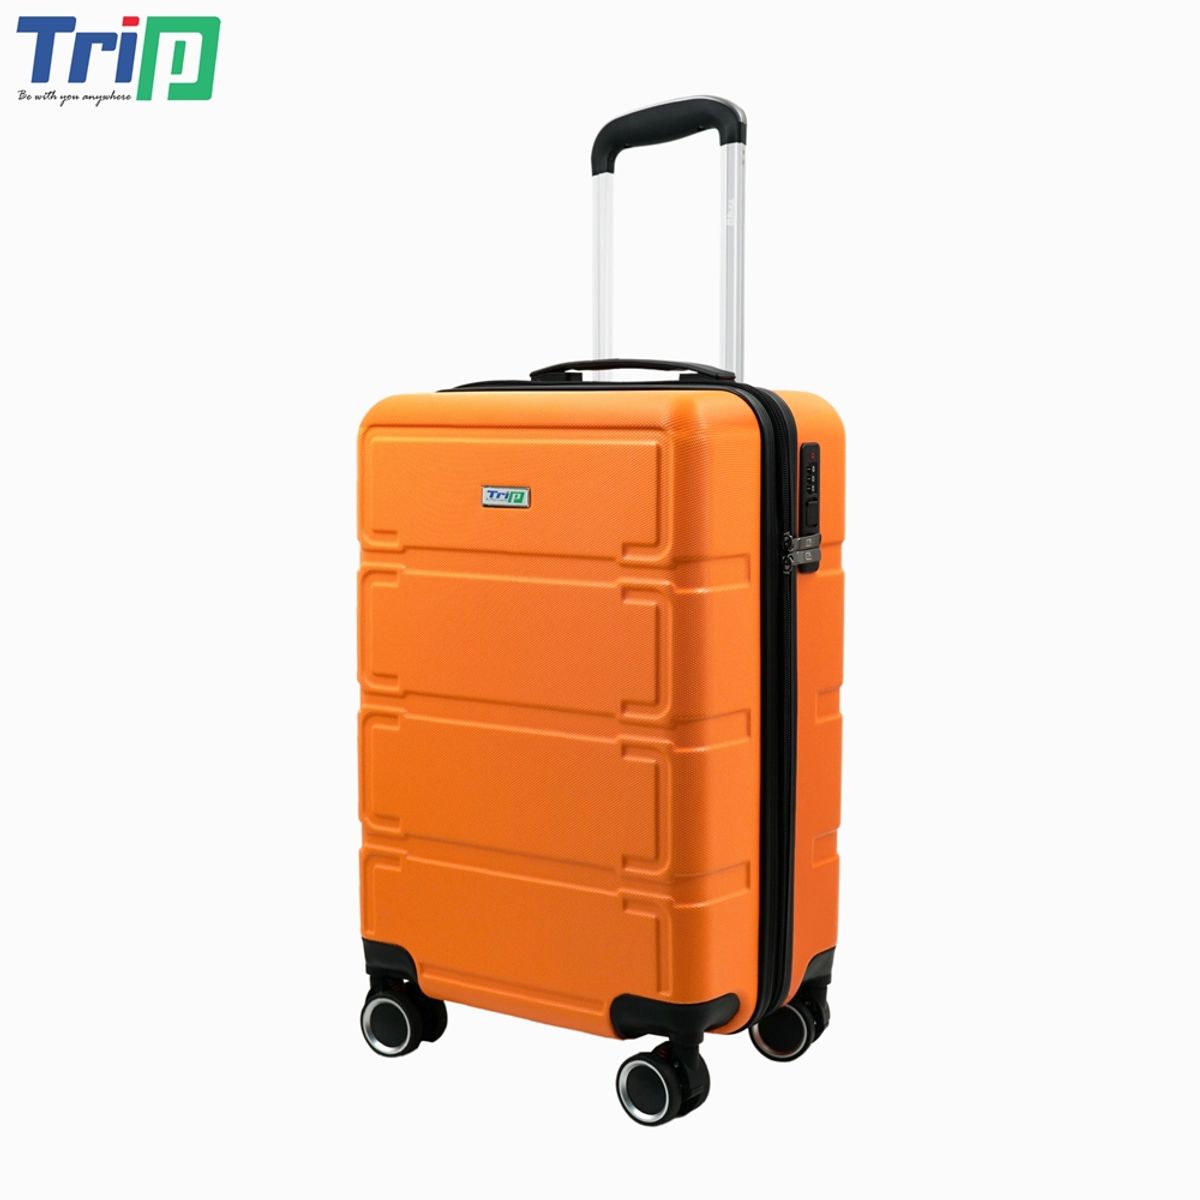 vali nhựa trip p806 size 24 inch, có khóa bảo mật, bảo hành 5 năm - freeship 4